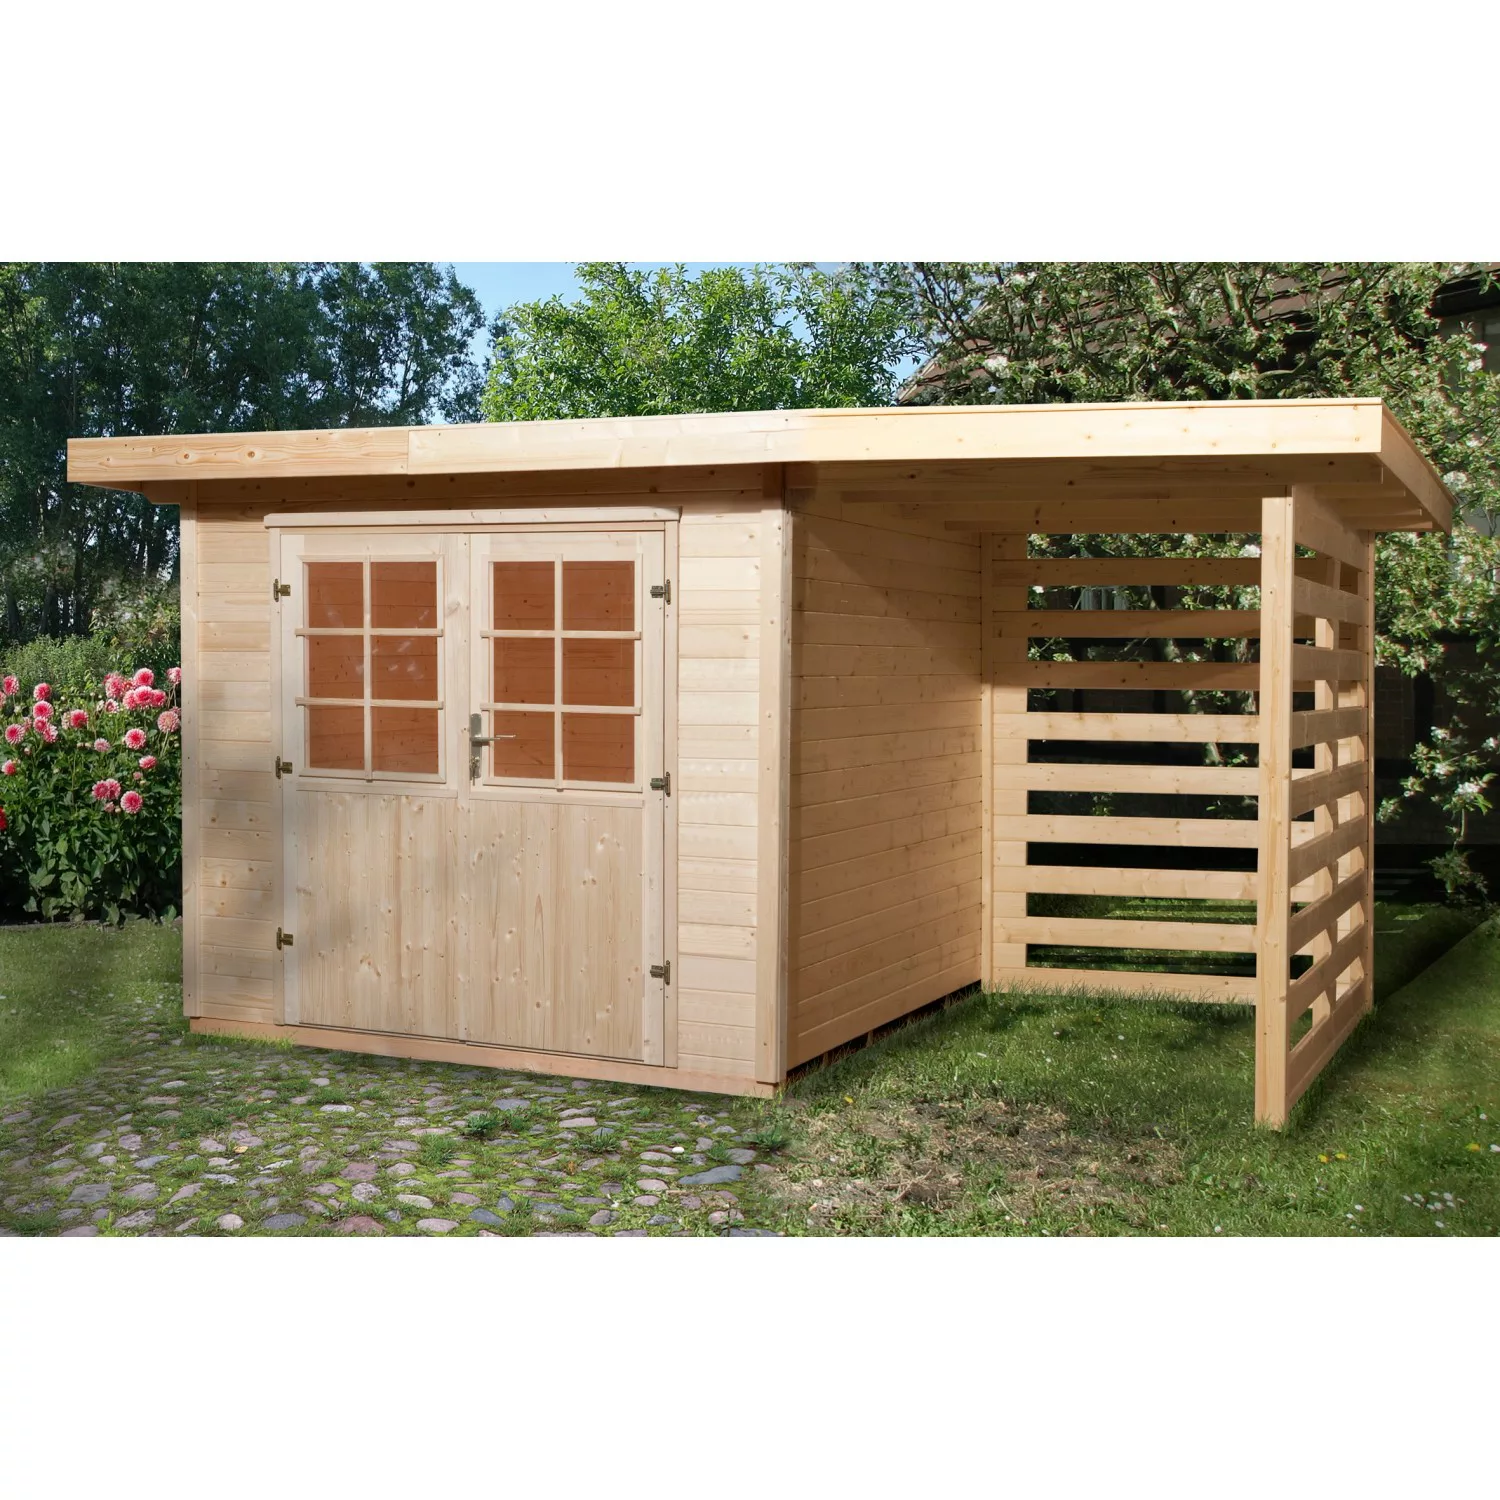 OBI Outdoor Living Holz-Gartenhaus La Spezia Flachdach 385 cm x 314 cm günstig online kaufen